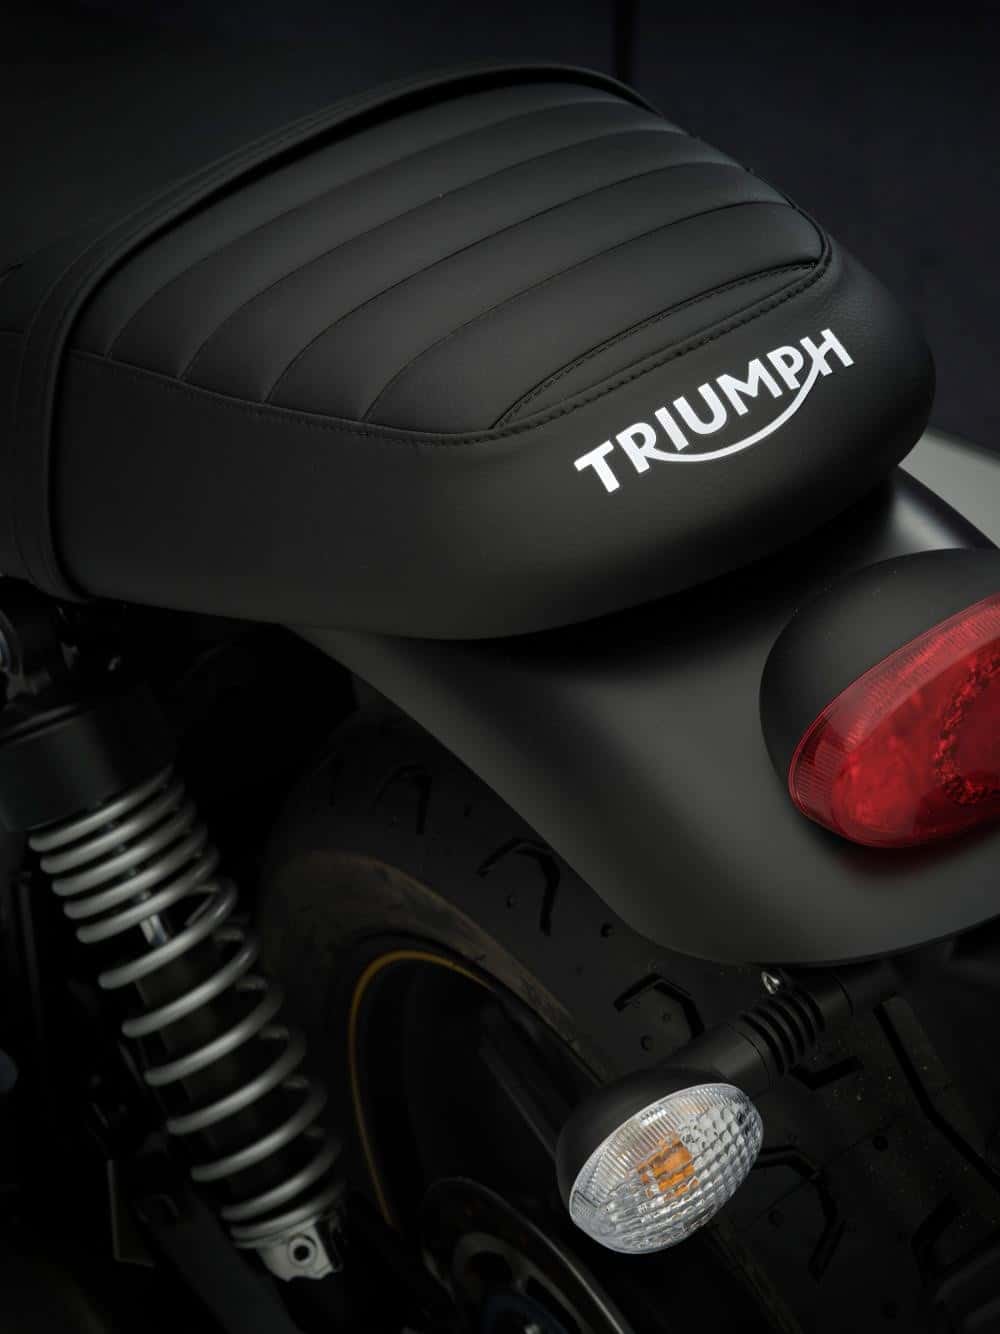 Triumph sprøjter 2021 nyheder ud